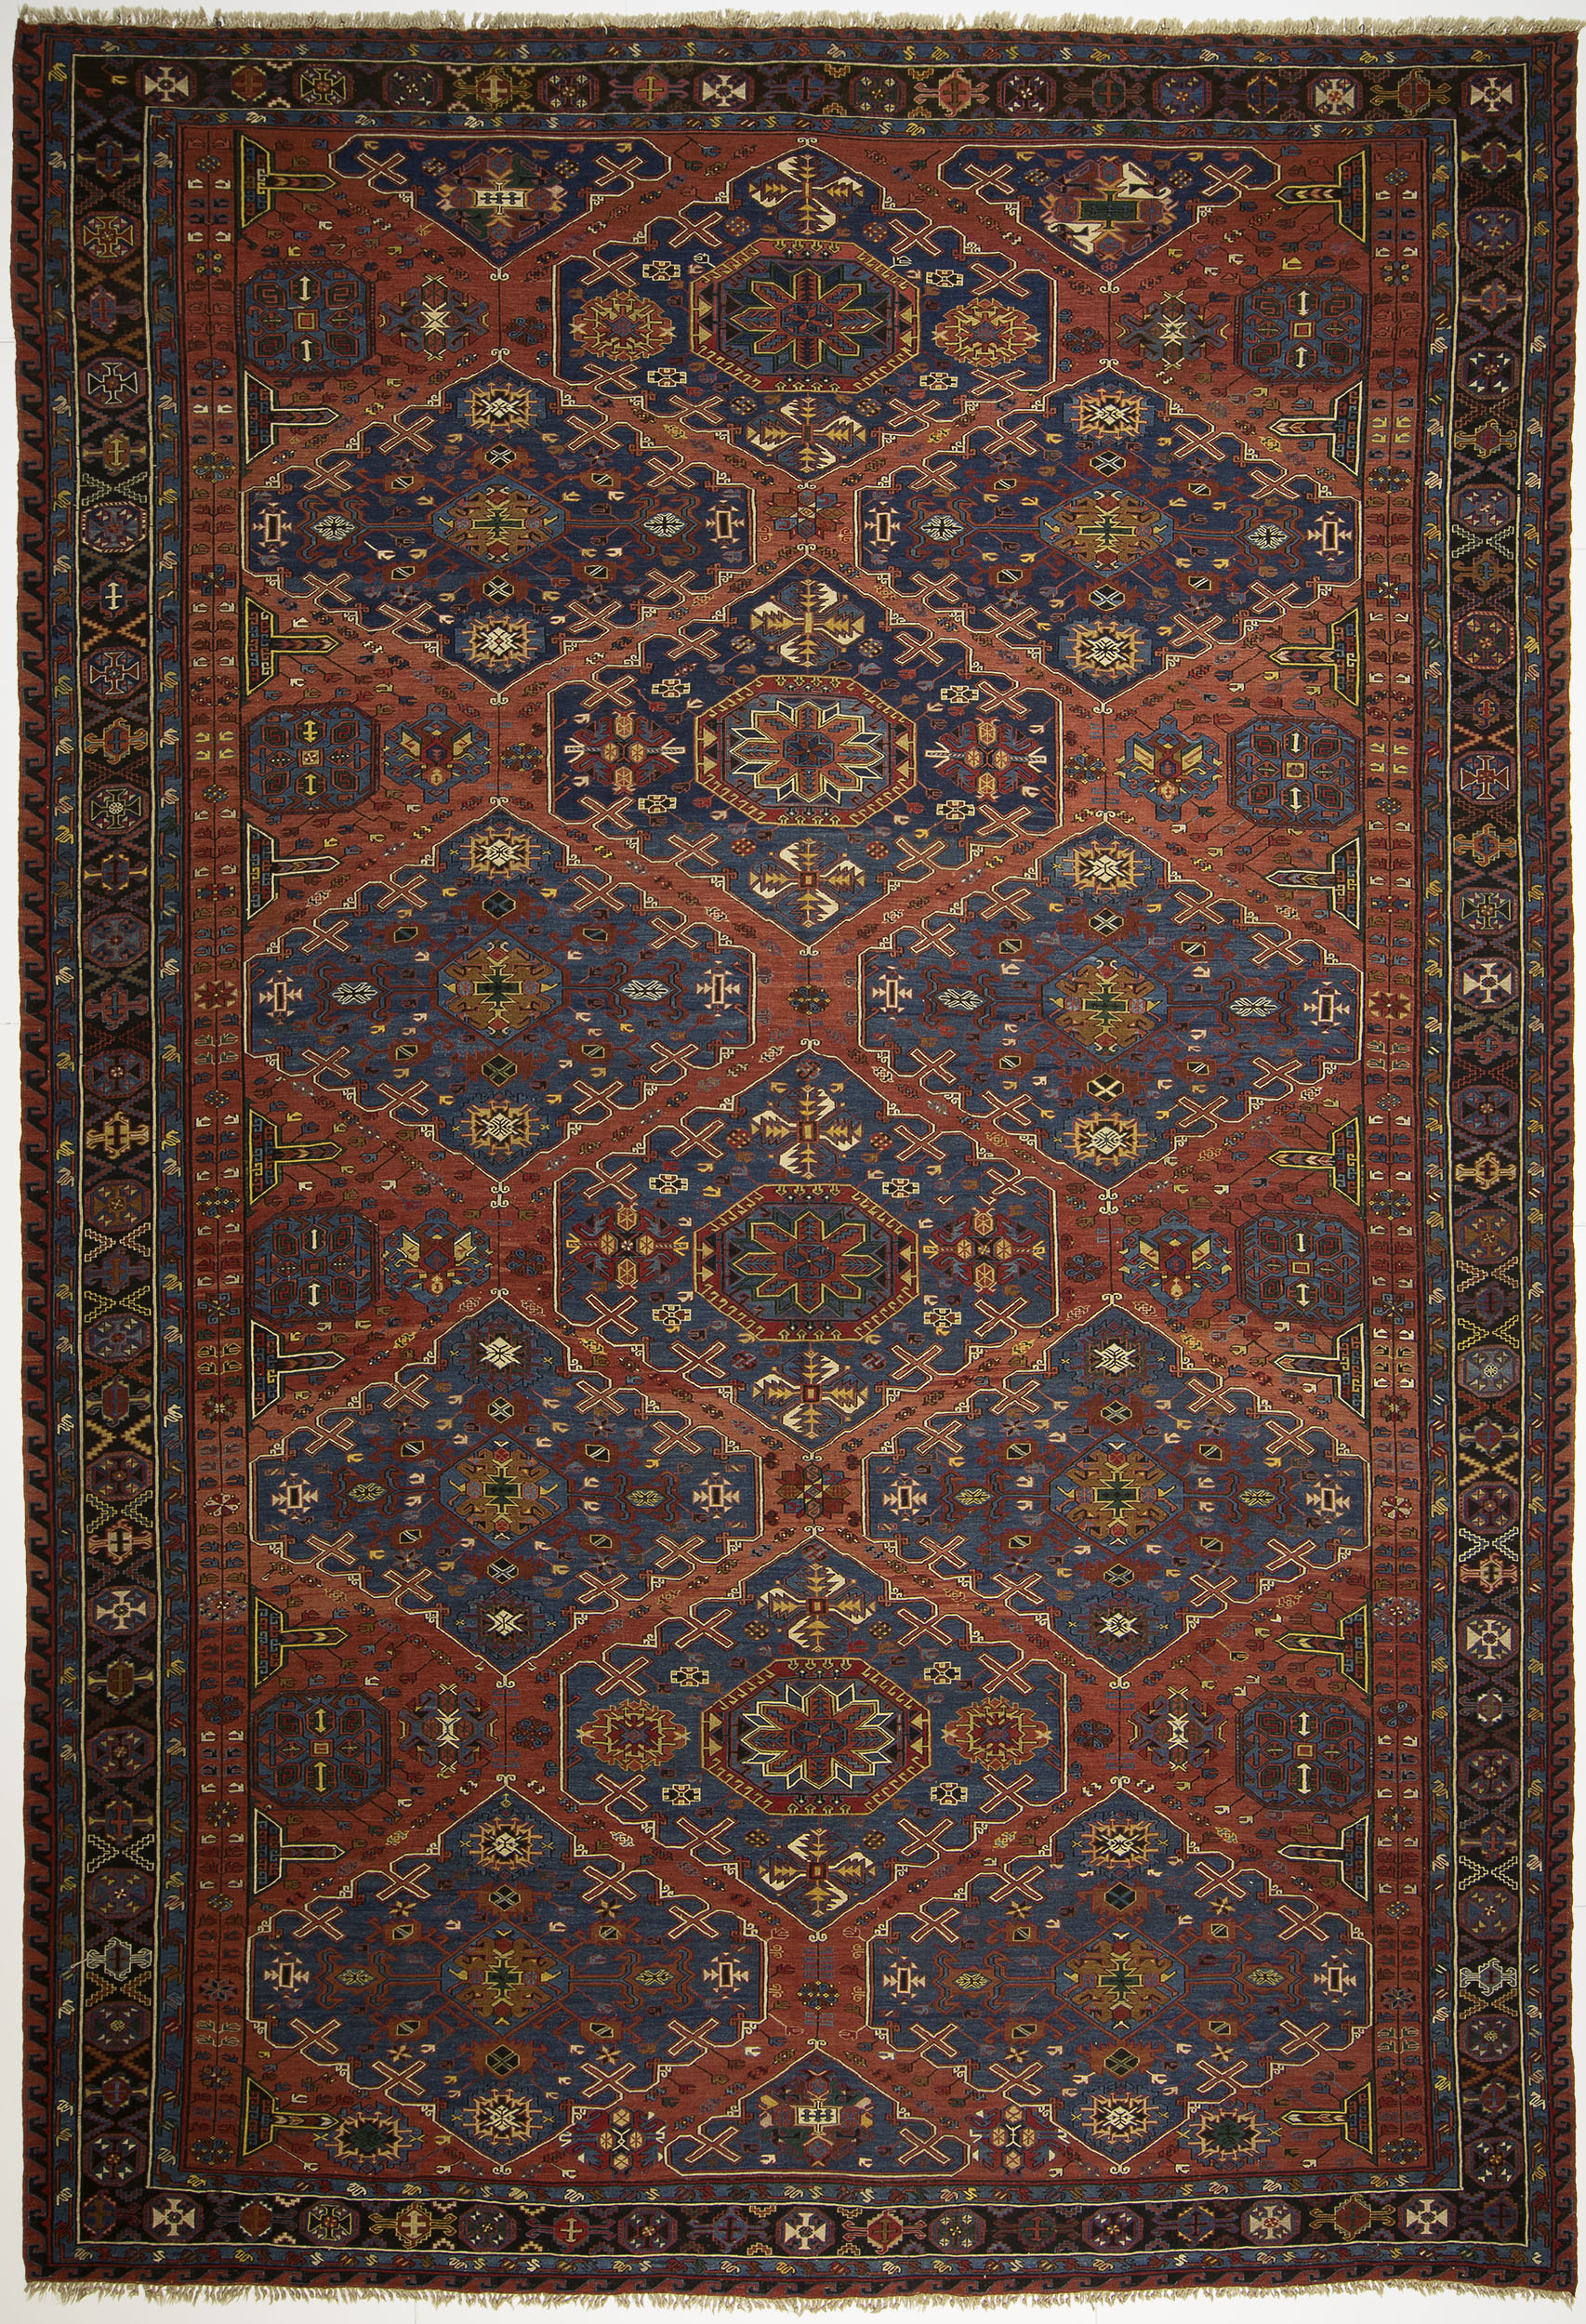 Soumac Carpet 16' 7" x 11' 0"